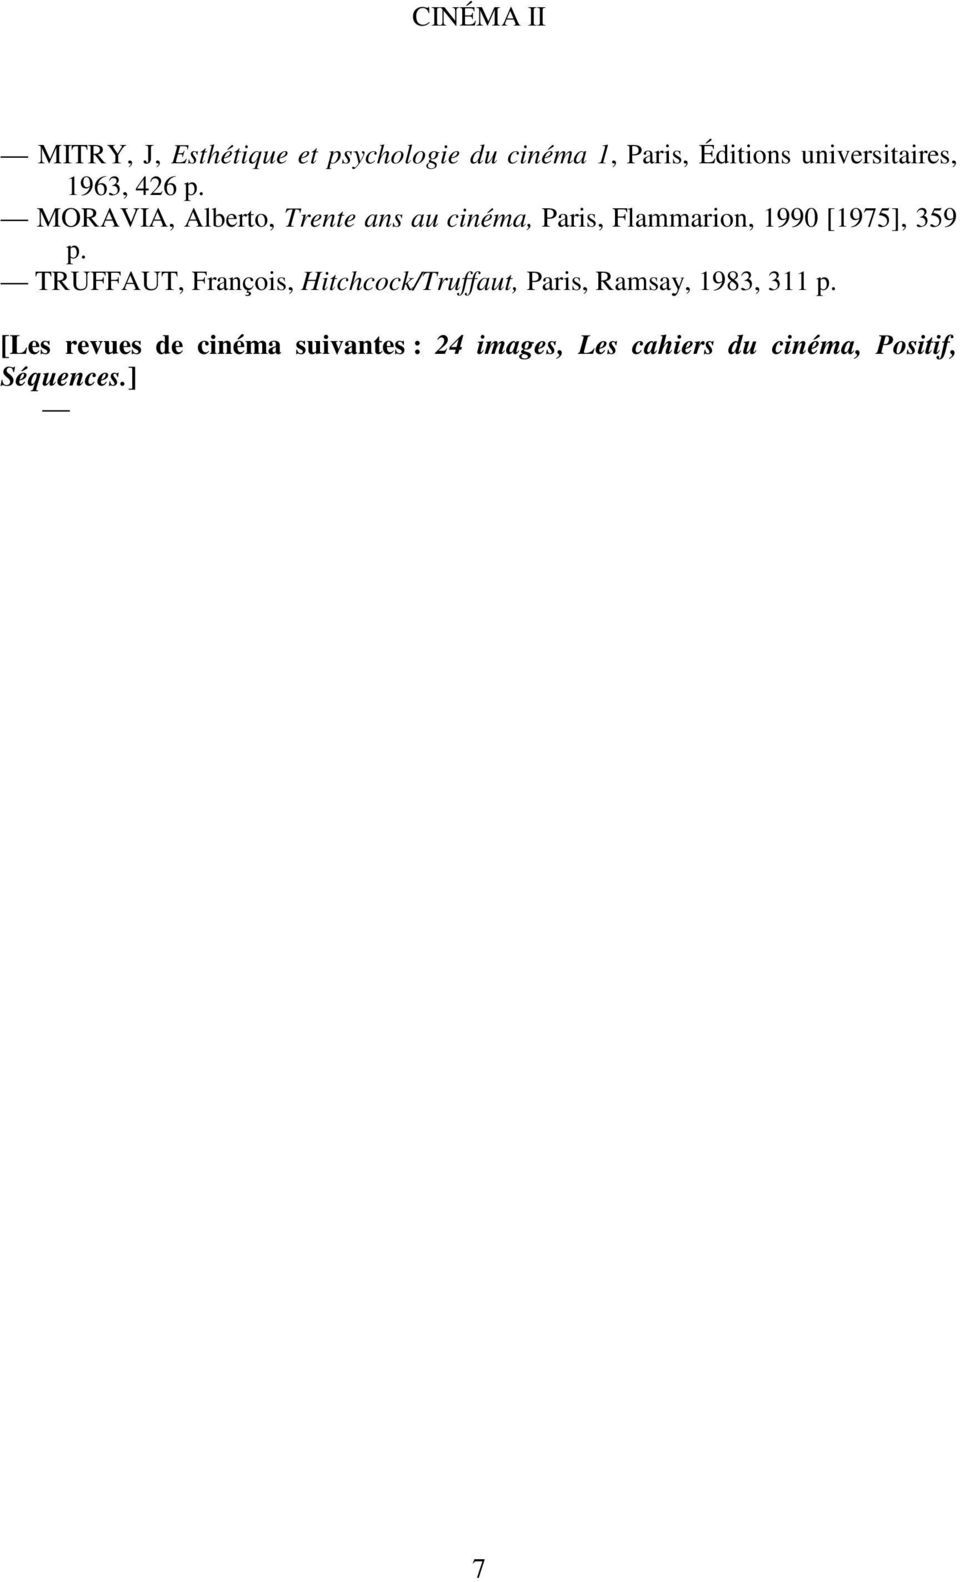 MORAVIA, Alberto, Trente ans au cinéma, Paris, Flammarion, 1990 [1975], 359 p.